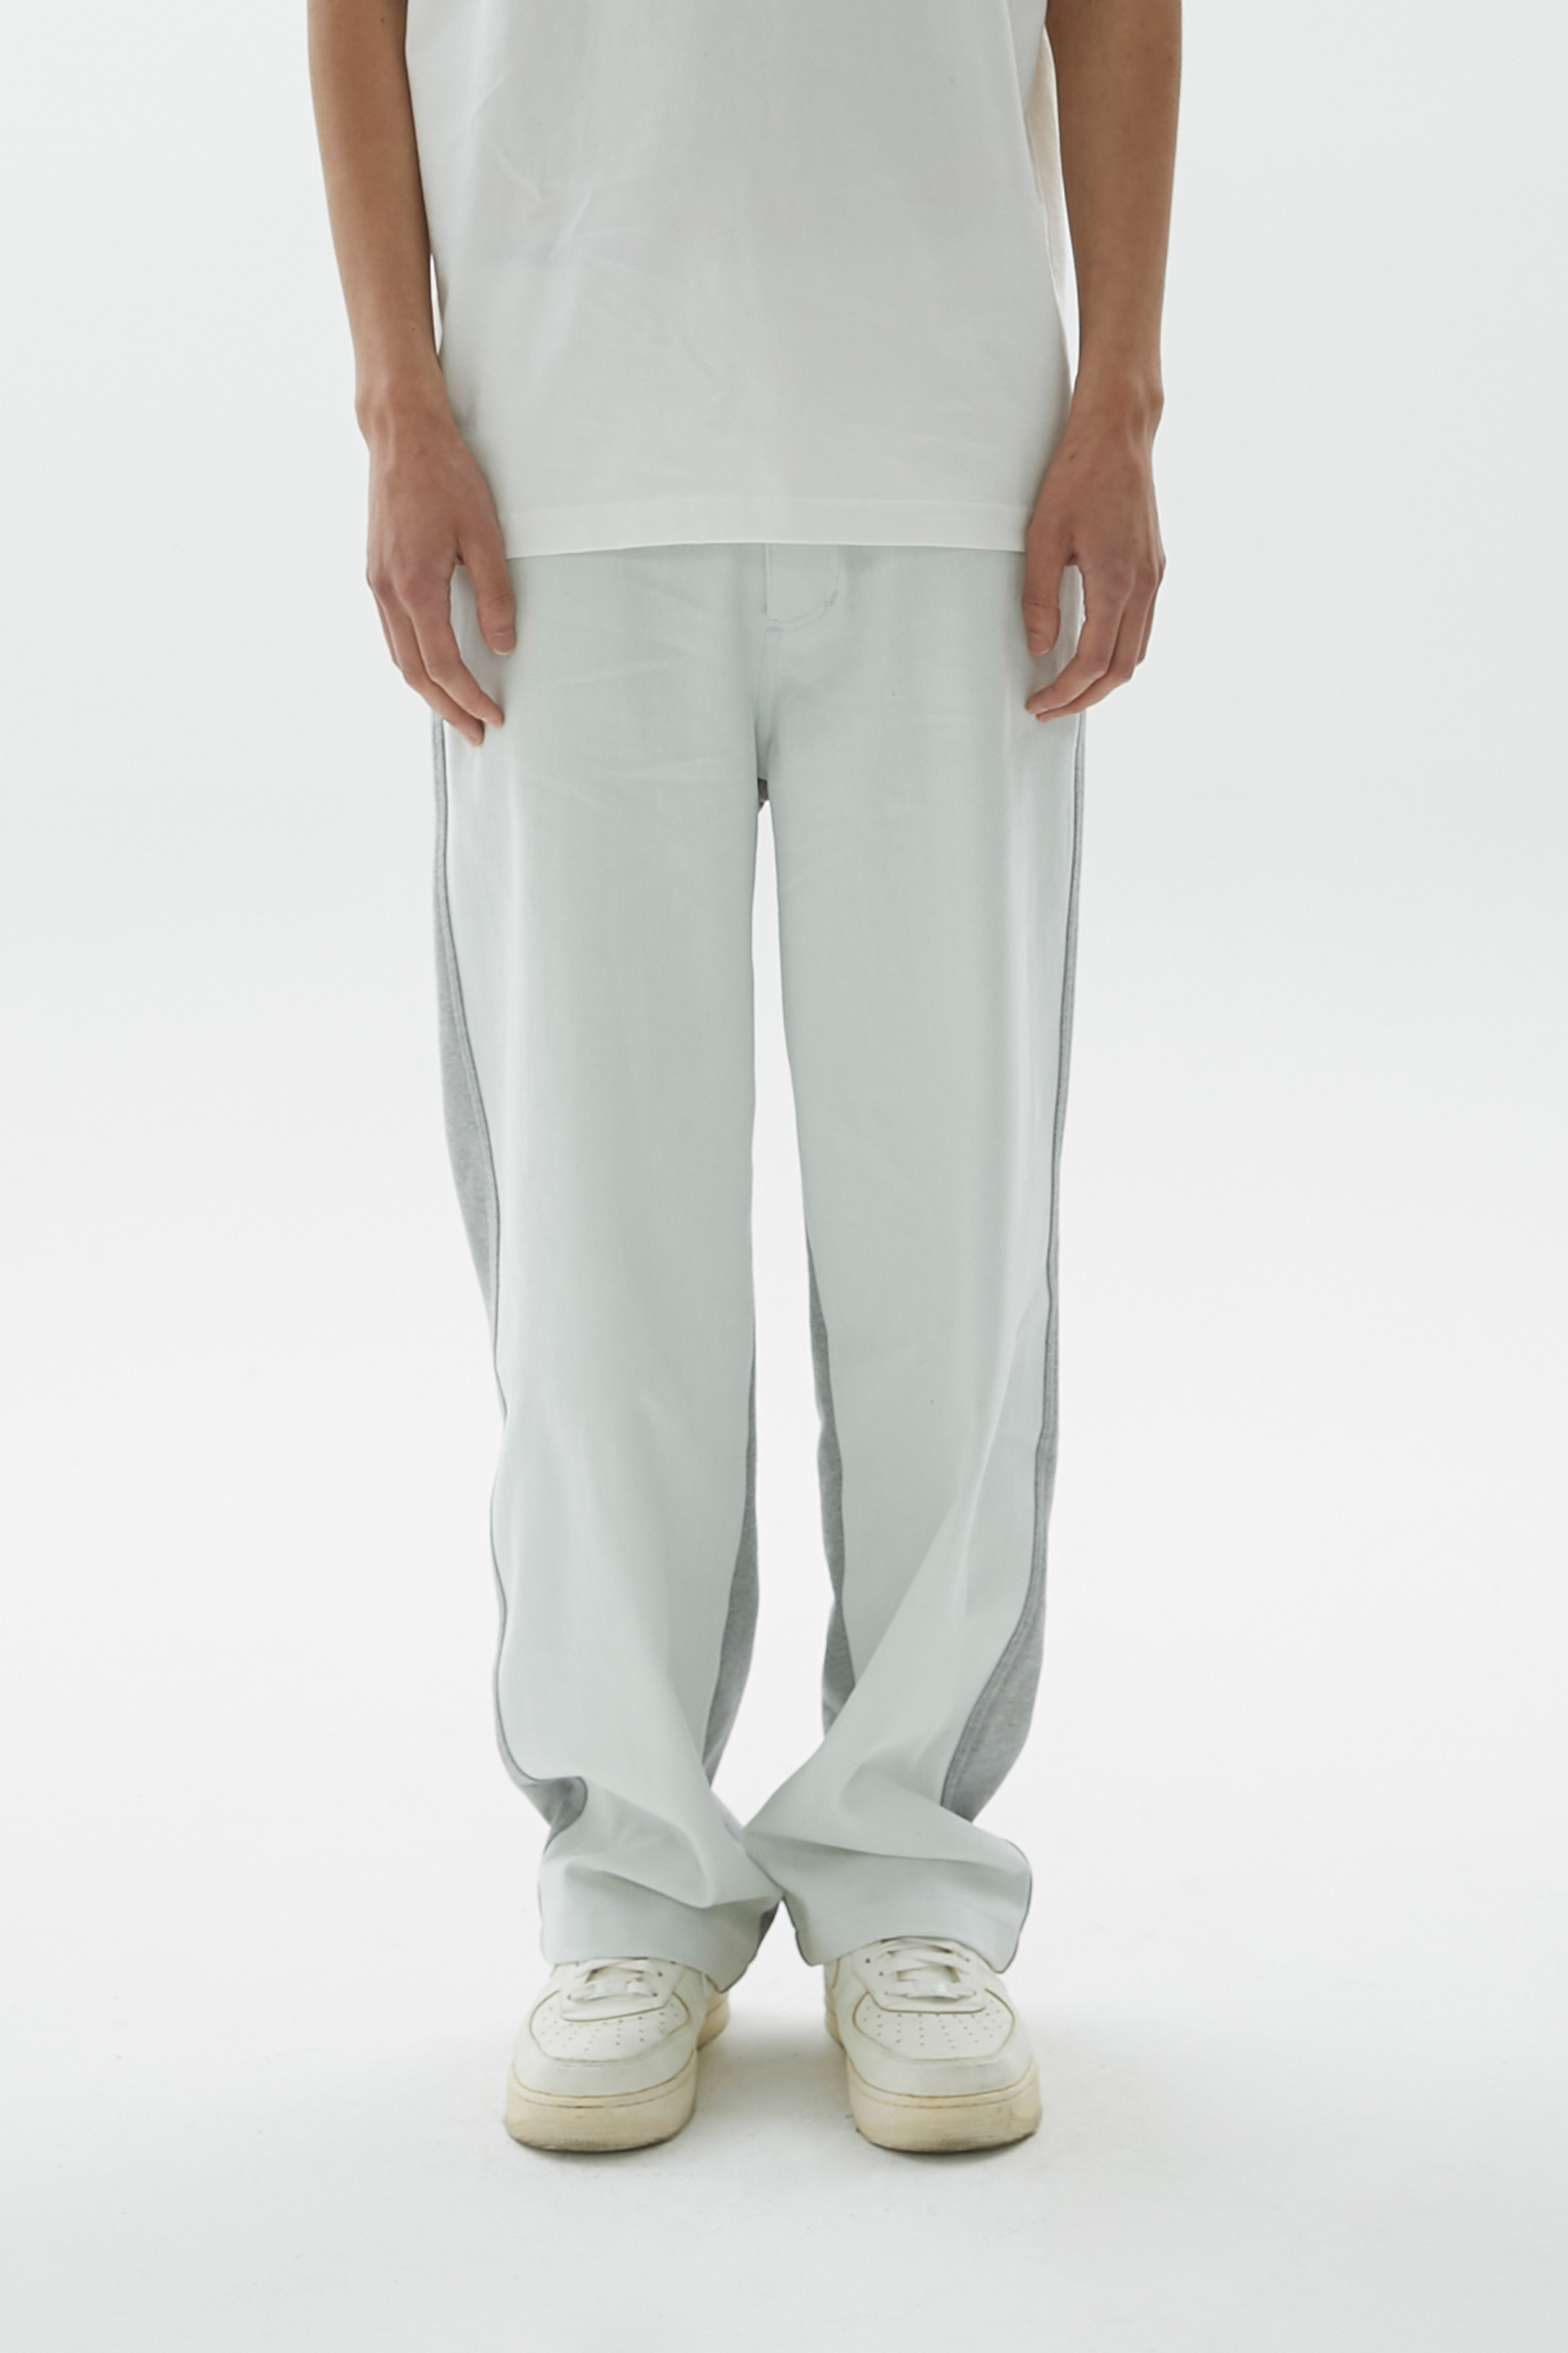 Spliced Denim pants (white/grey)